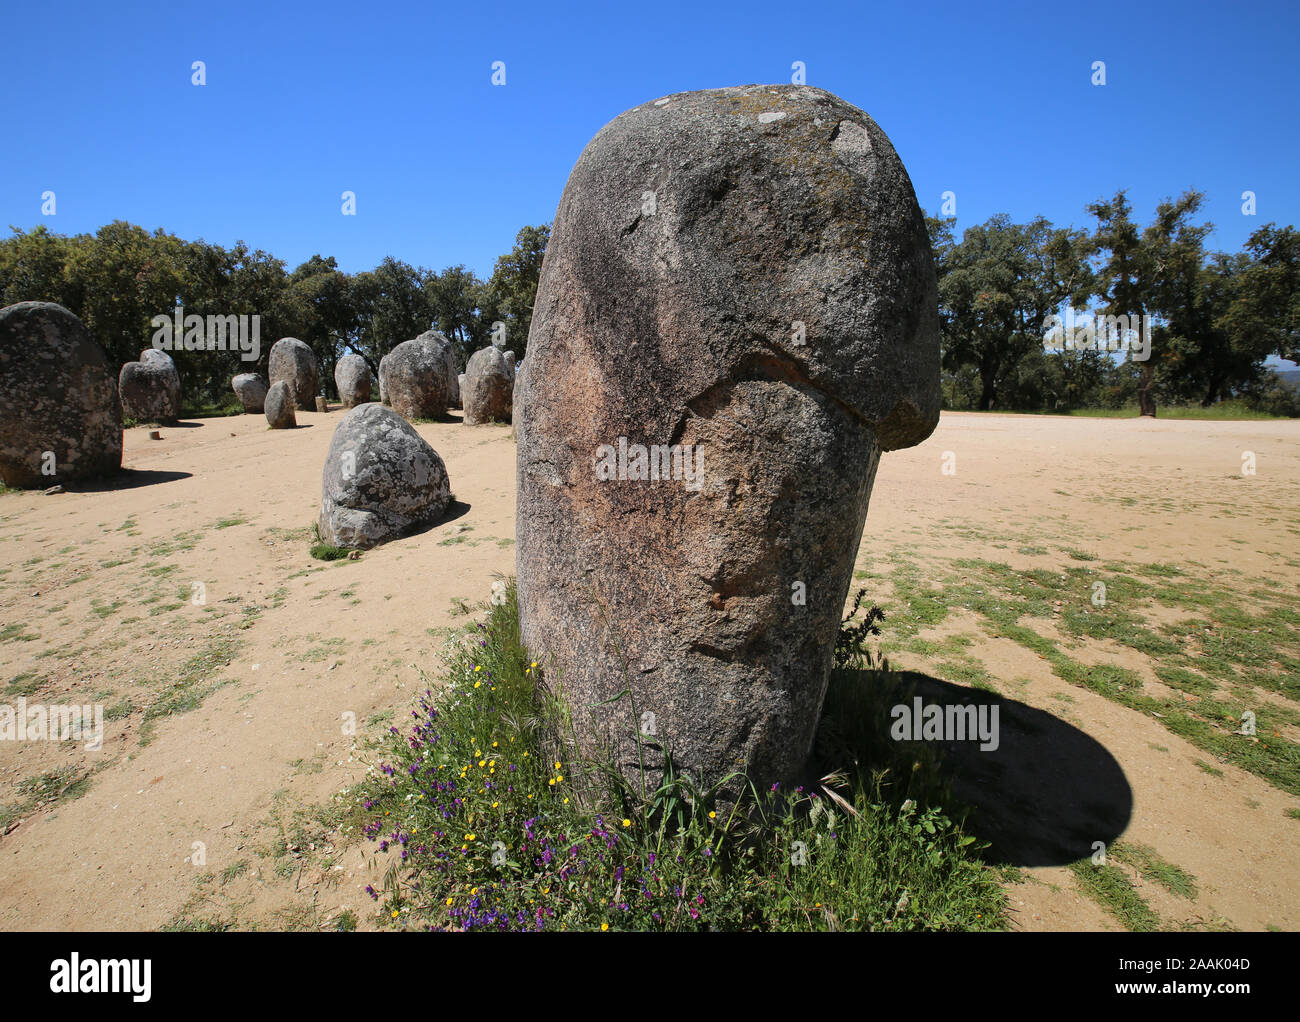 Portugal, archeological site of Cromeleque Dos Almendres Stock Photo